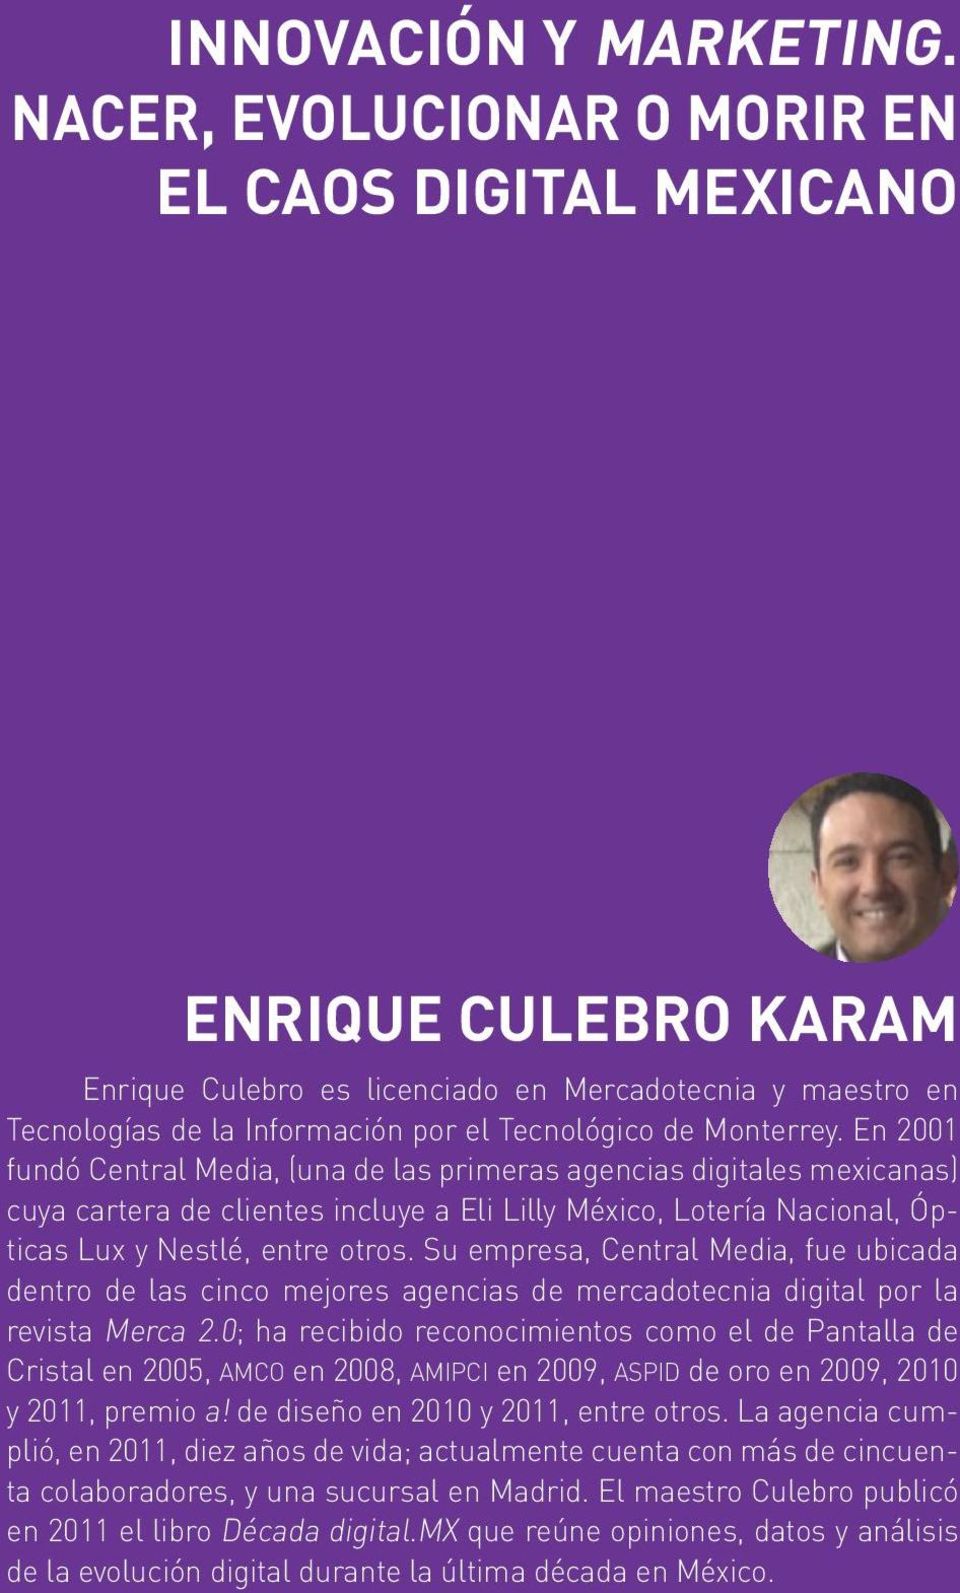 En 2001 fundó Central Media, (una de las primeras agencias digitales mexicanas) cuya cartera de clientes incluye a Eli Lilly México, Lotería Nacional, Ópticas Lux y Nestlé, entre otros.